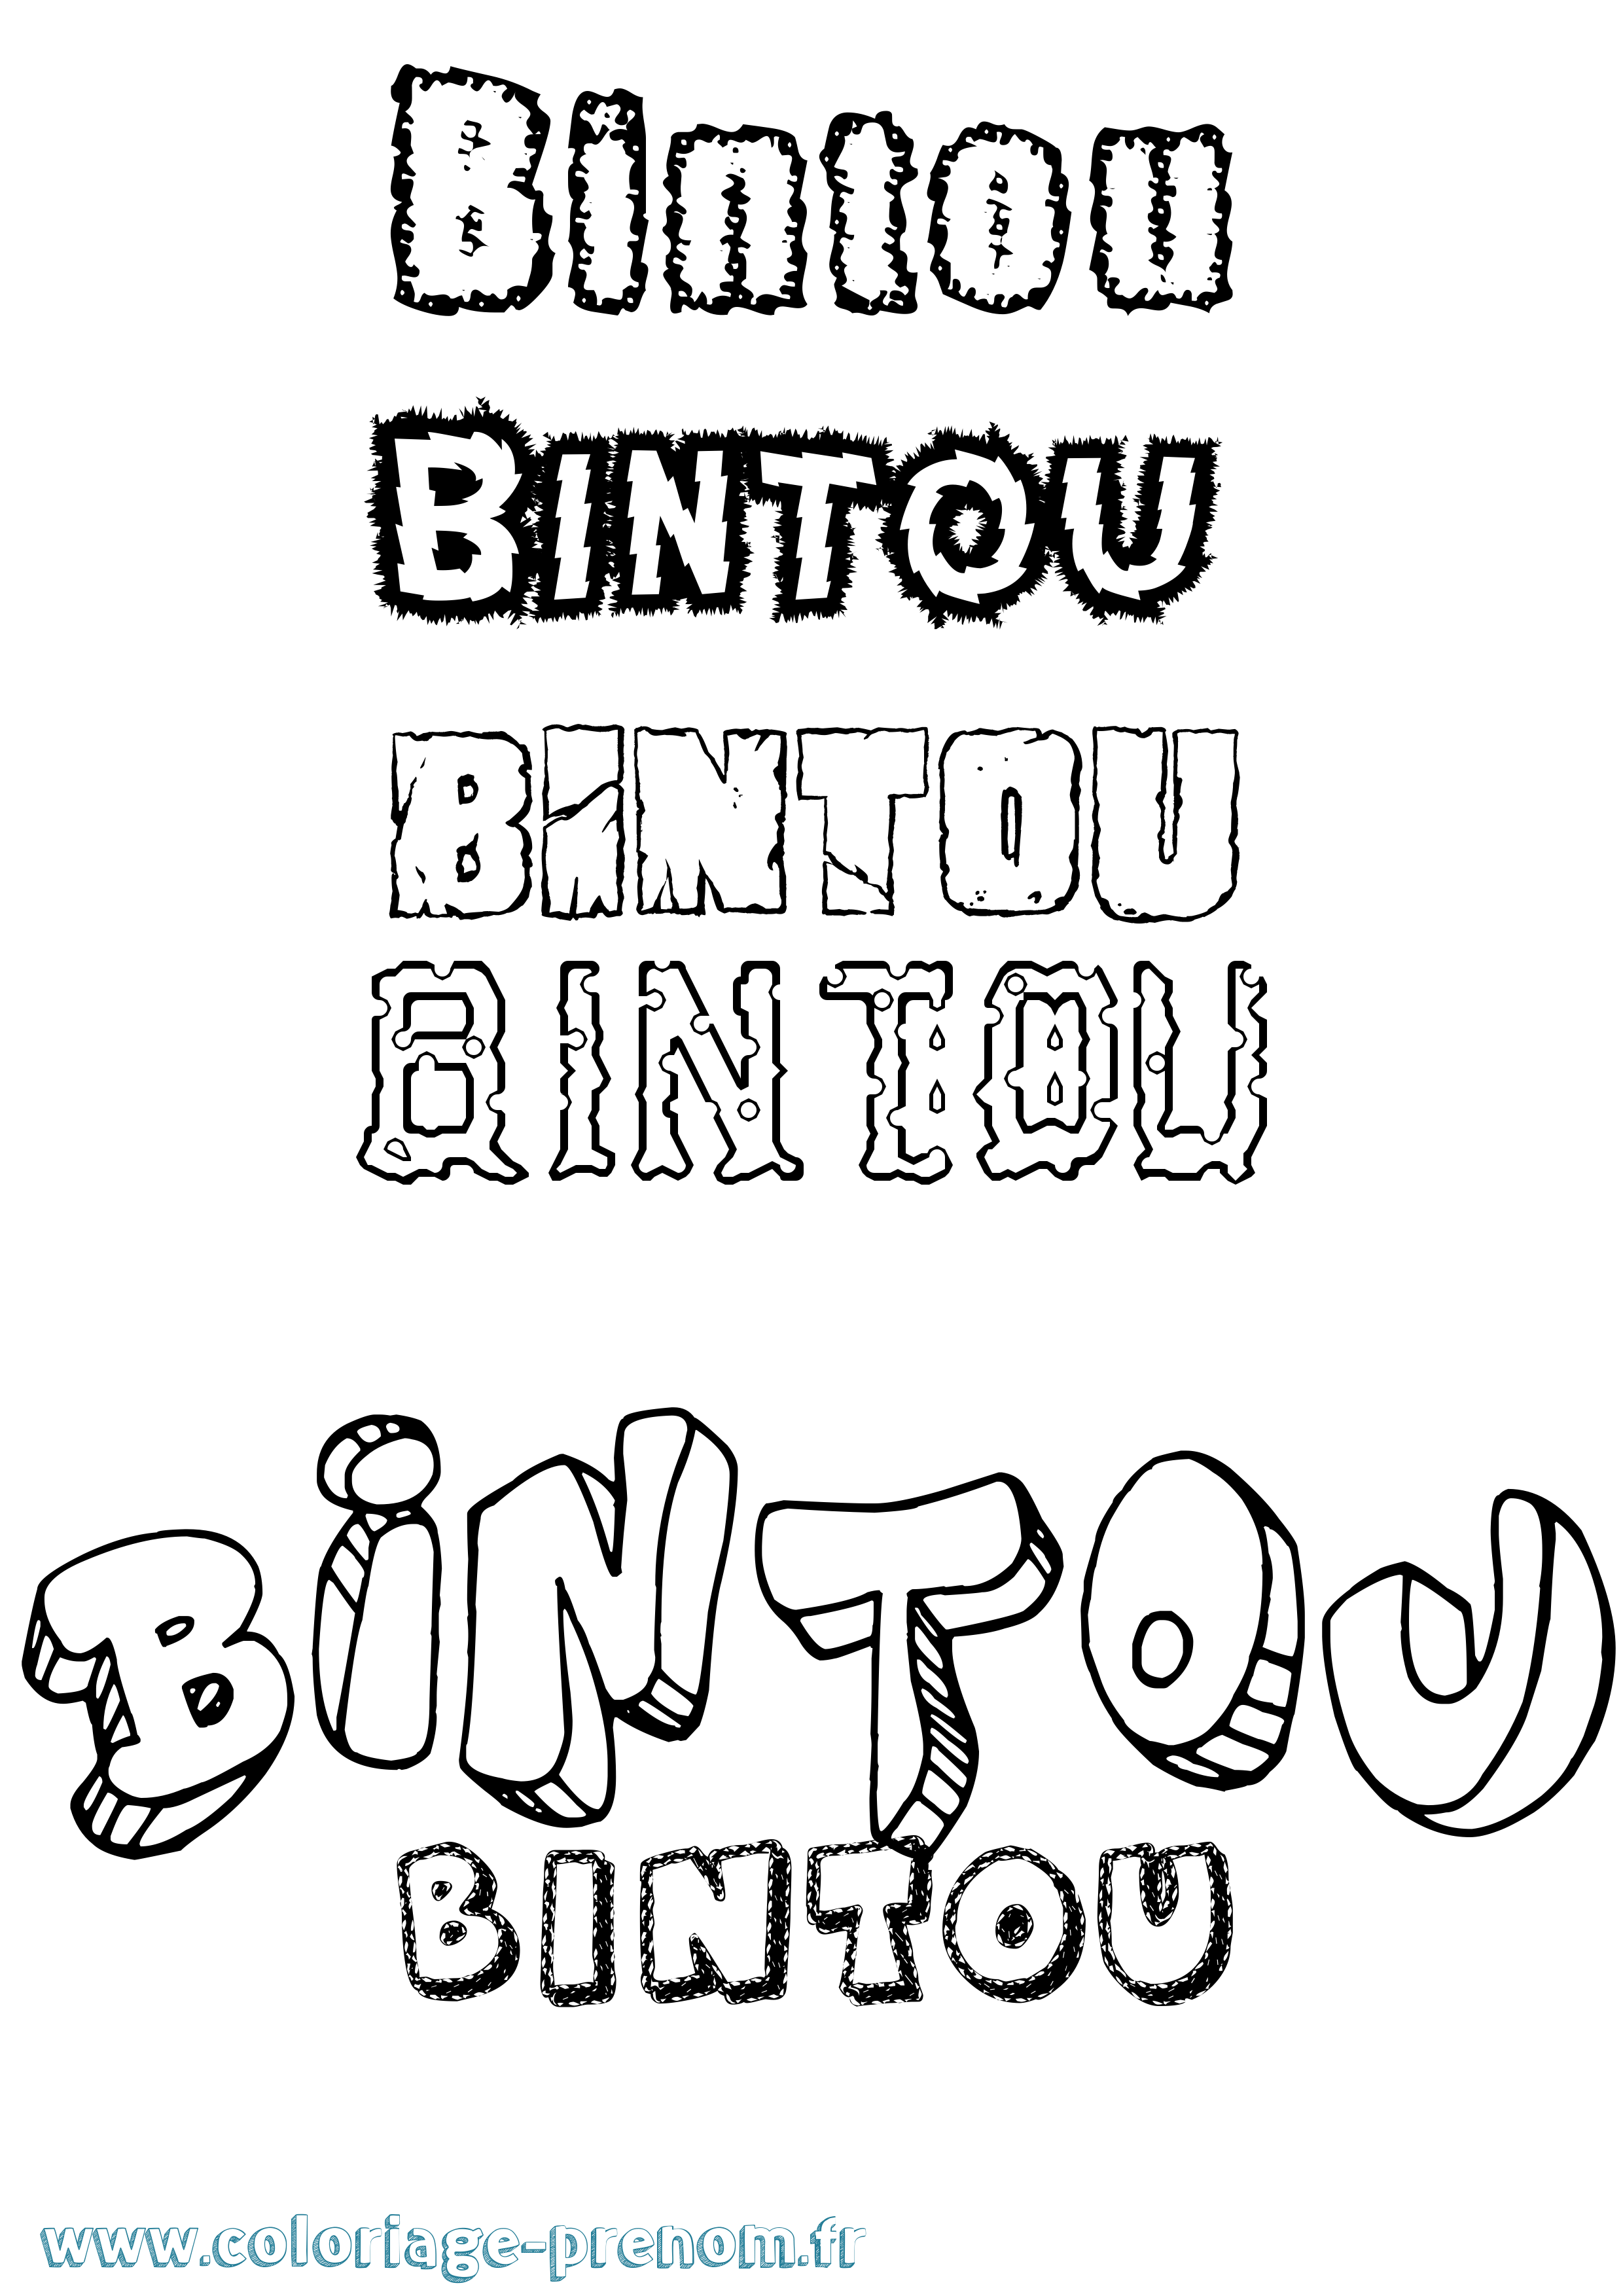 Coloriage prénom Bintou Destructuré